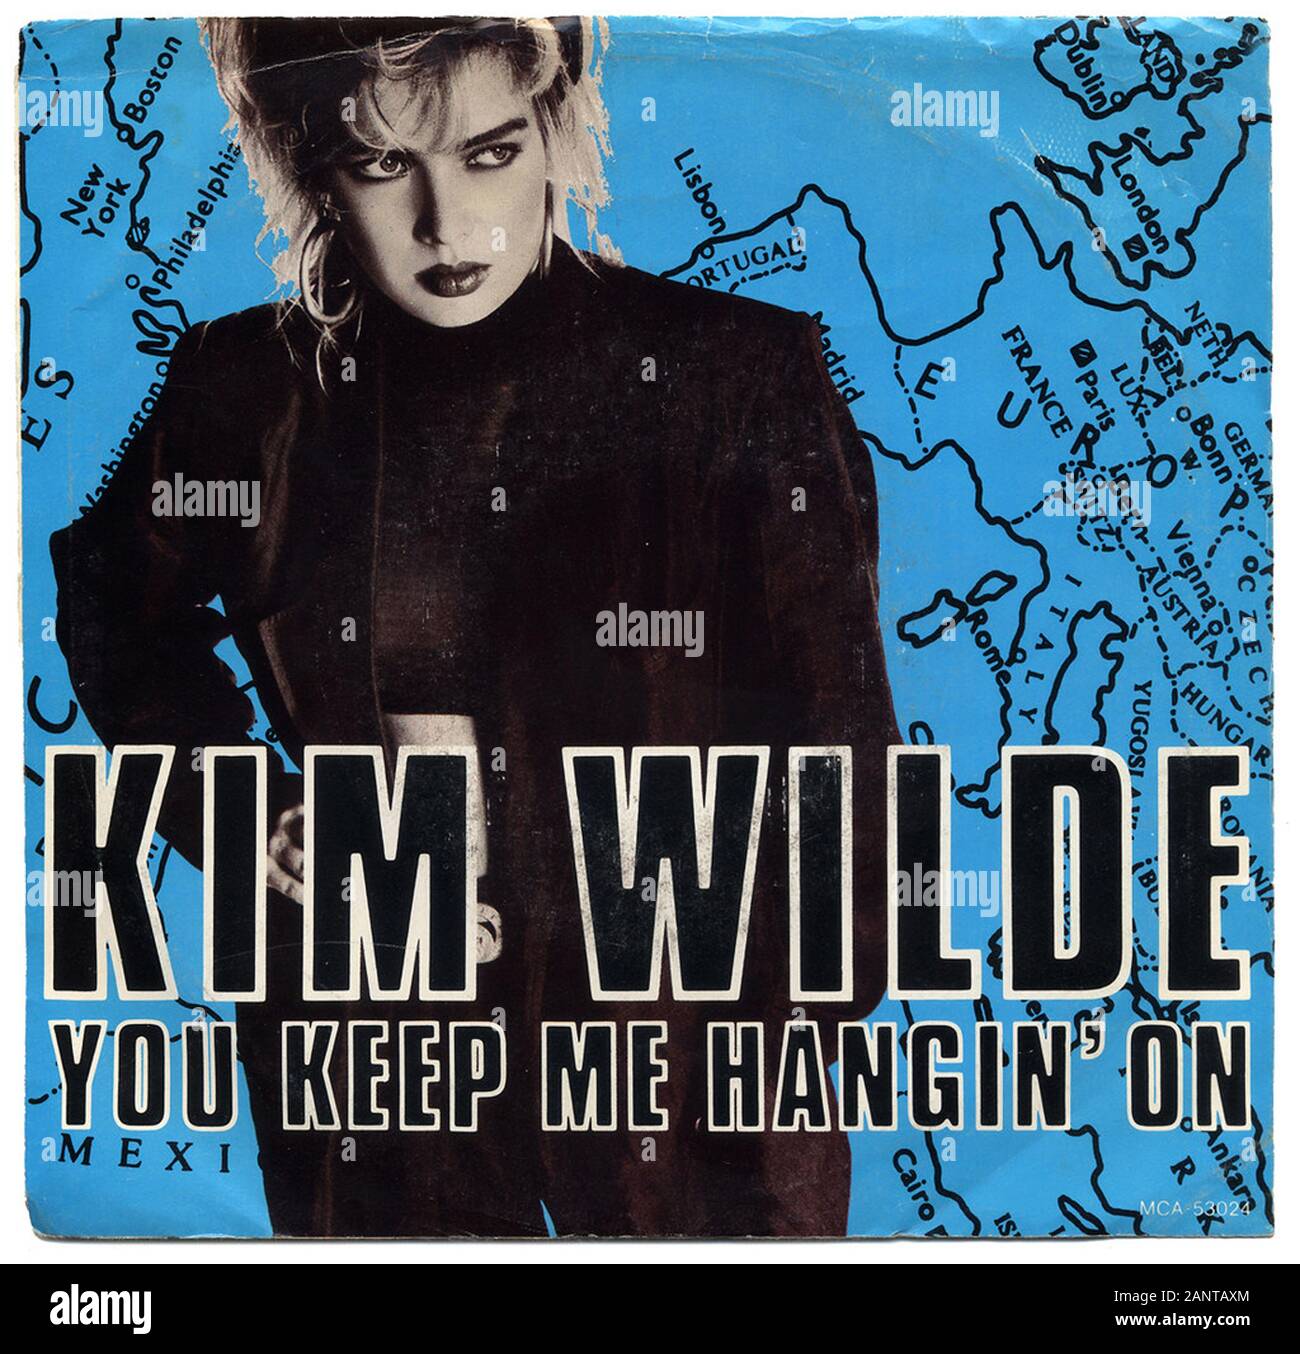 Kim Wilde - Mcleod - Classic vintage Vinyl Album Stockfoto